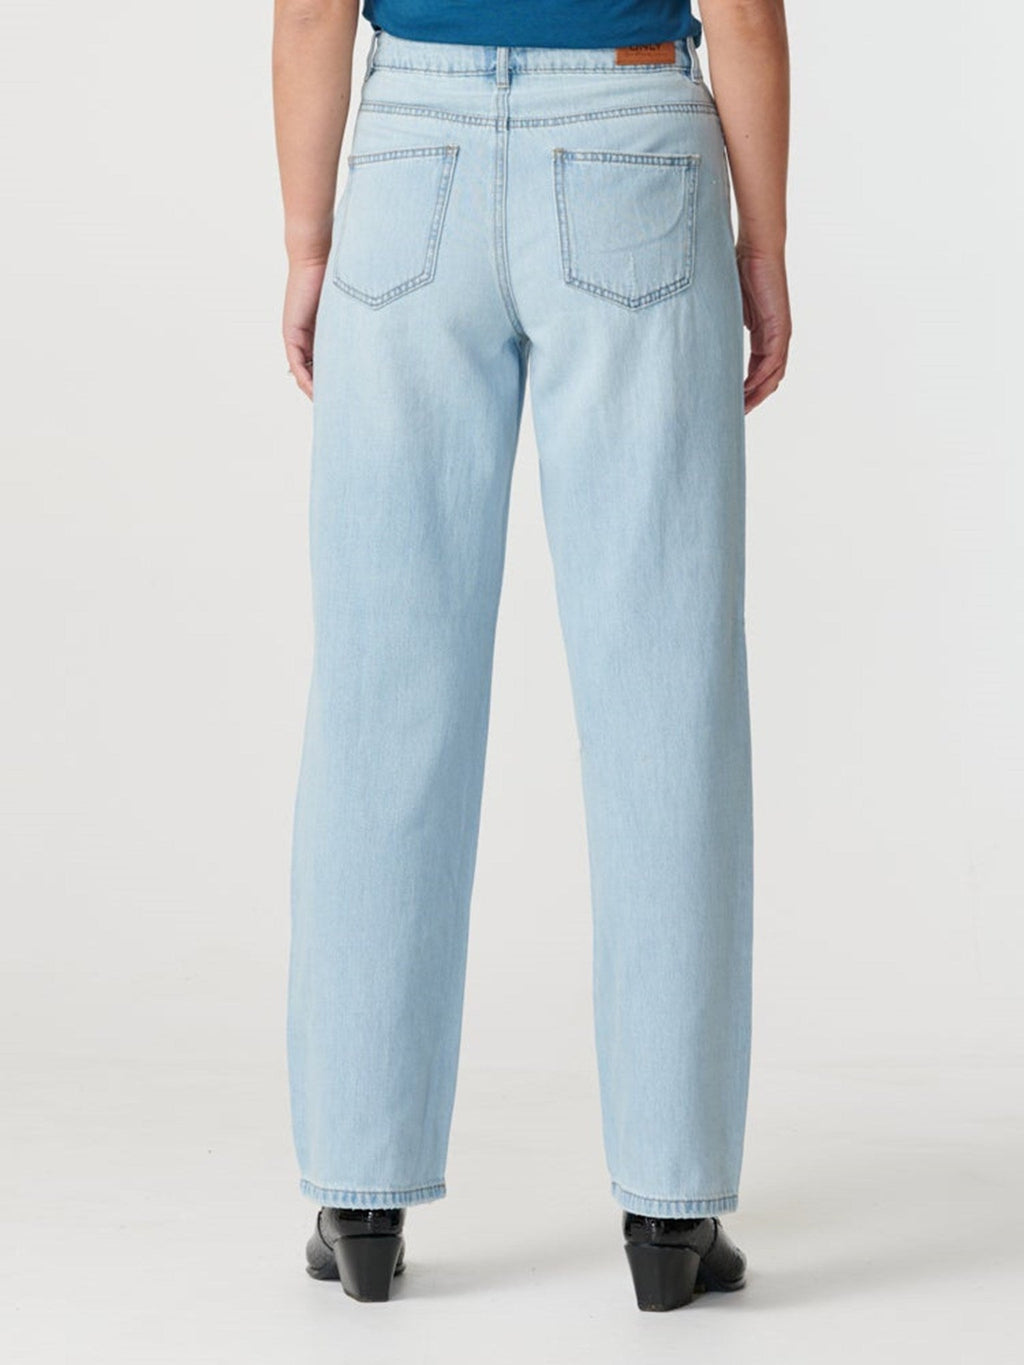 Jeans juteux (jambe large) - bleu de jean léger